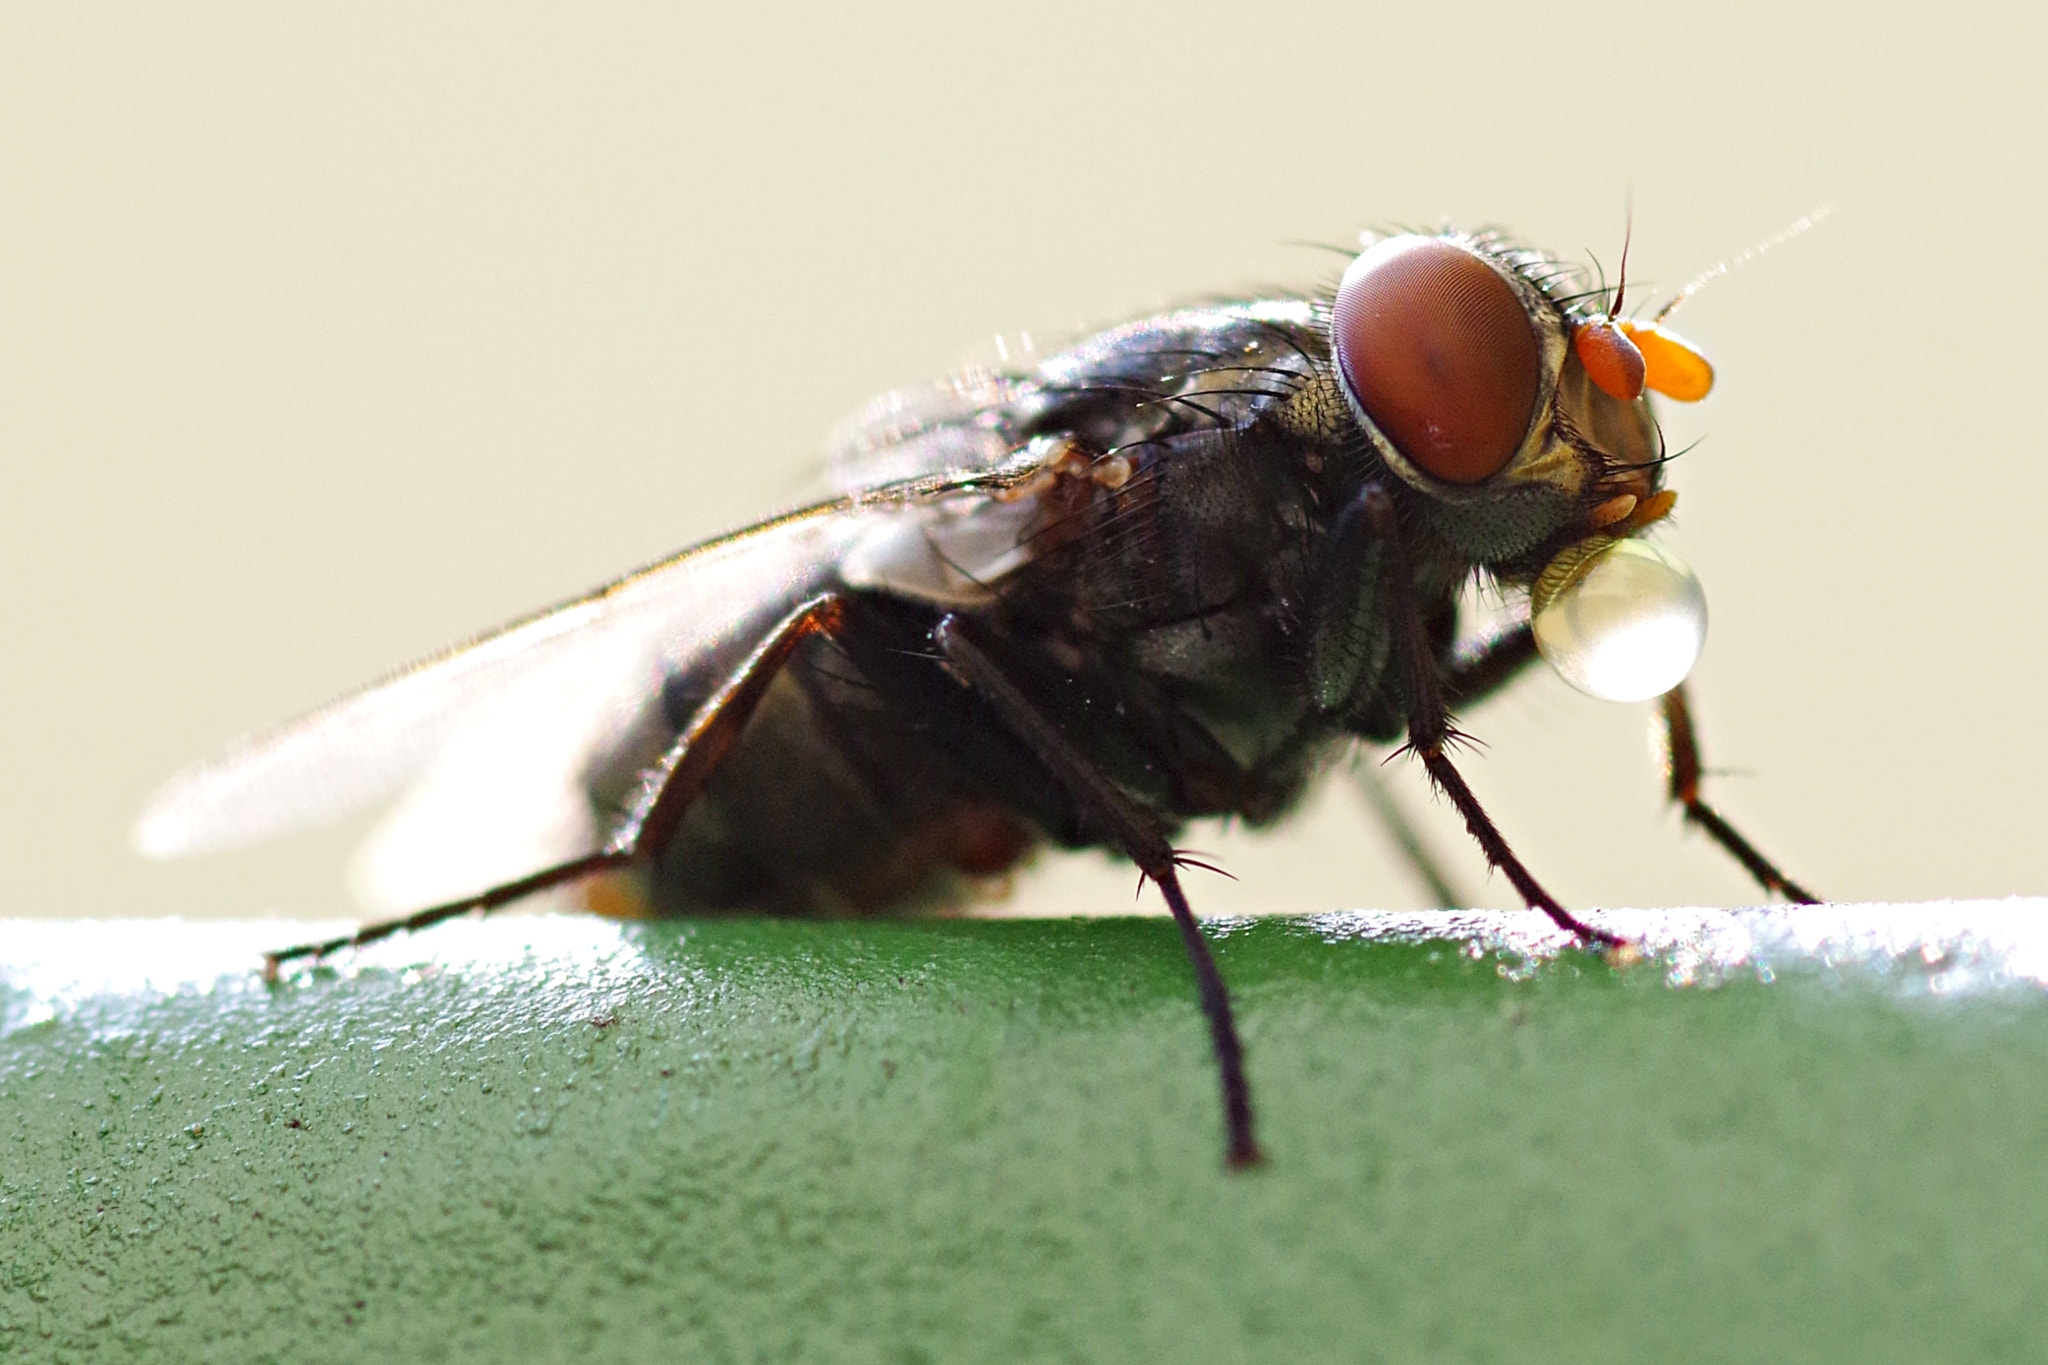 Pentax K-S2 sample photo. La mosca y la burbuja photography